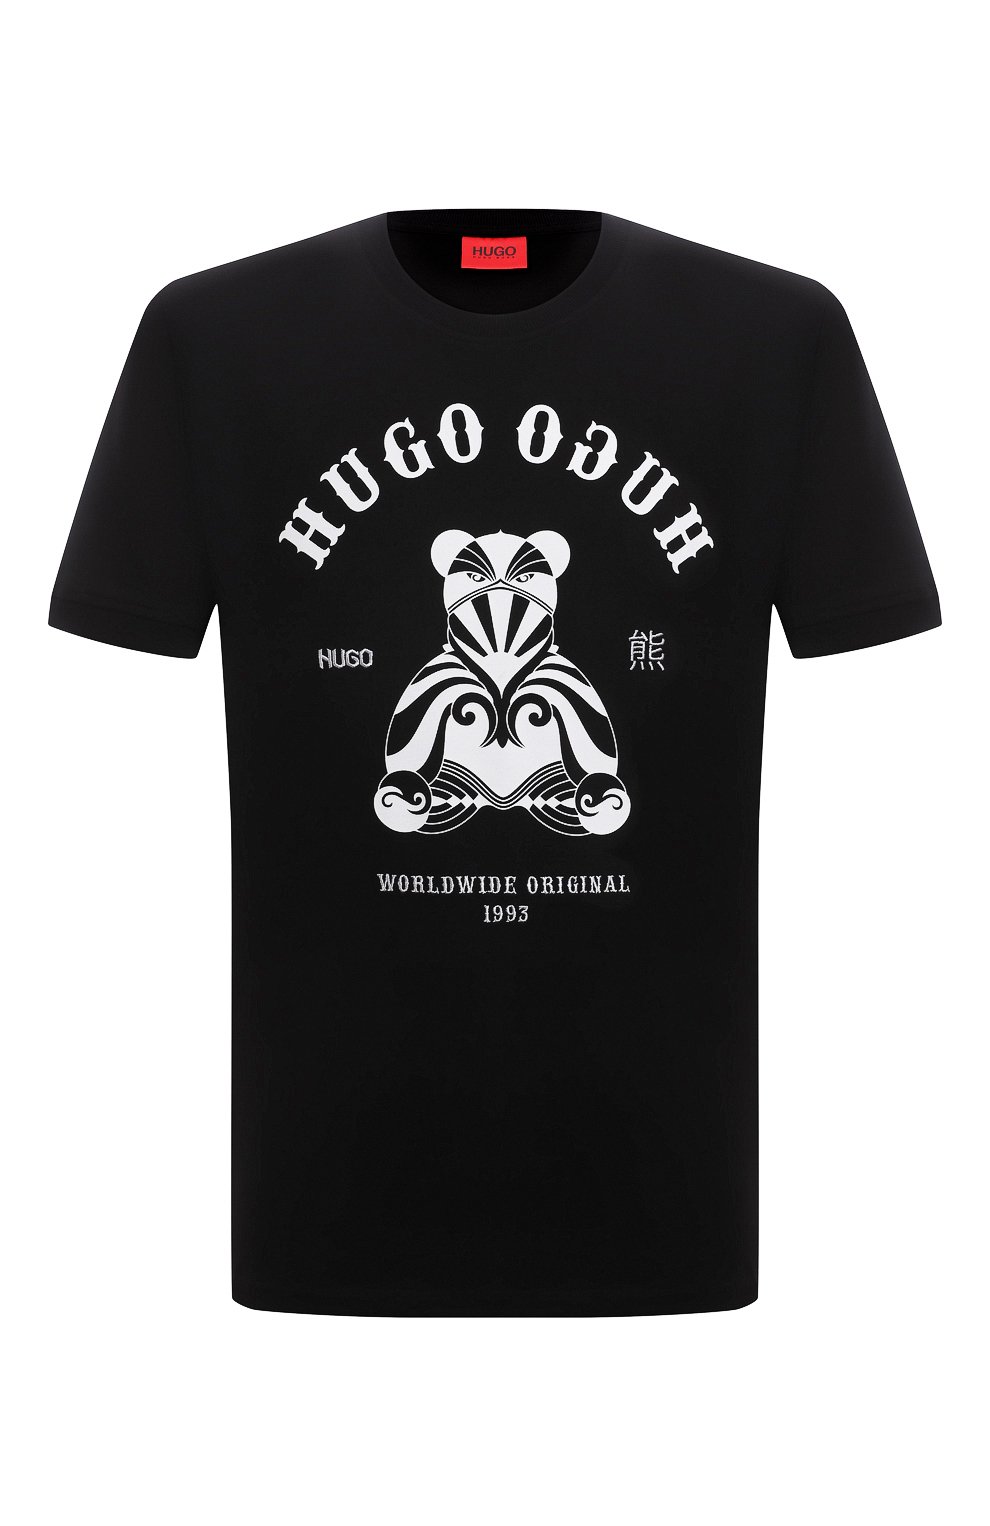 Футболка Boss Bear. Hugo Boss мужская футболка с собакой. Футболка Hugo черная. Футболка Hugo Boss с принтом. Problems hugo